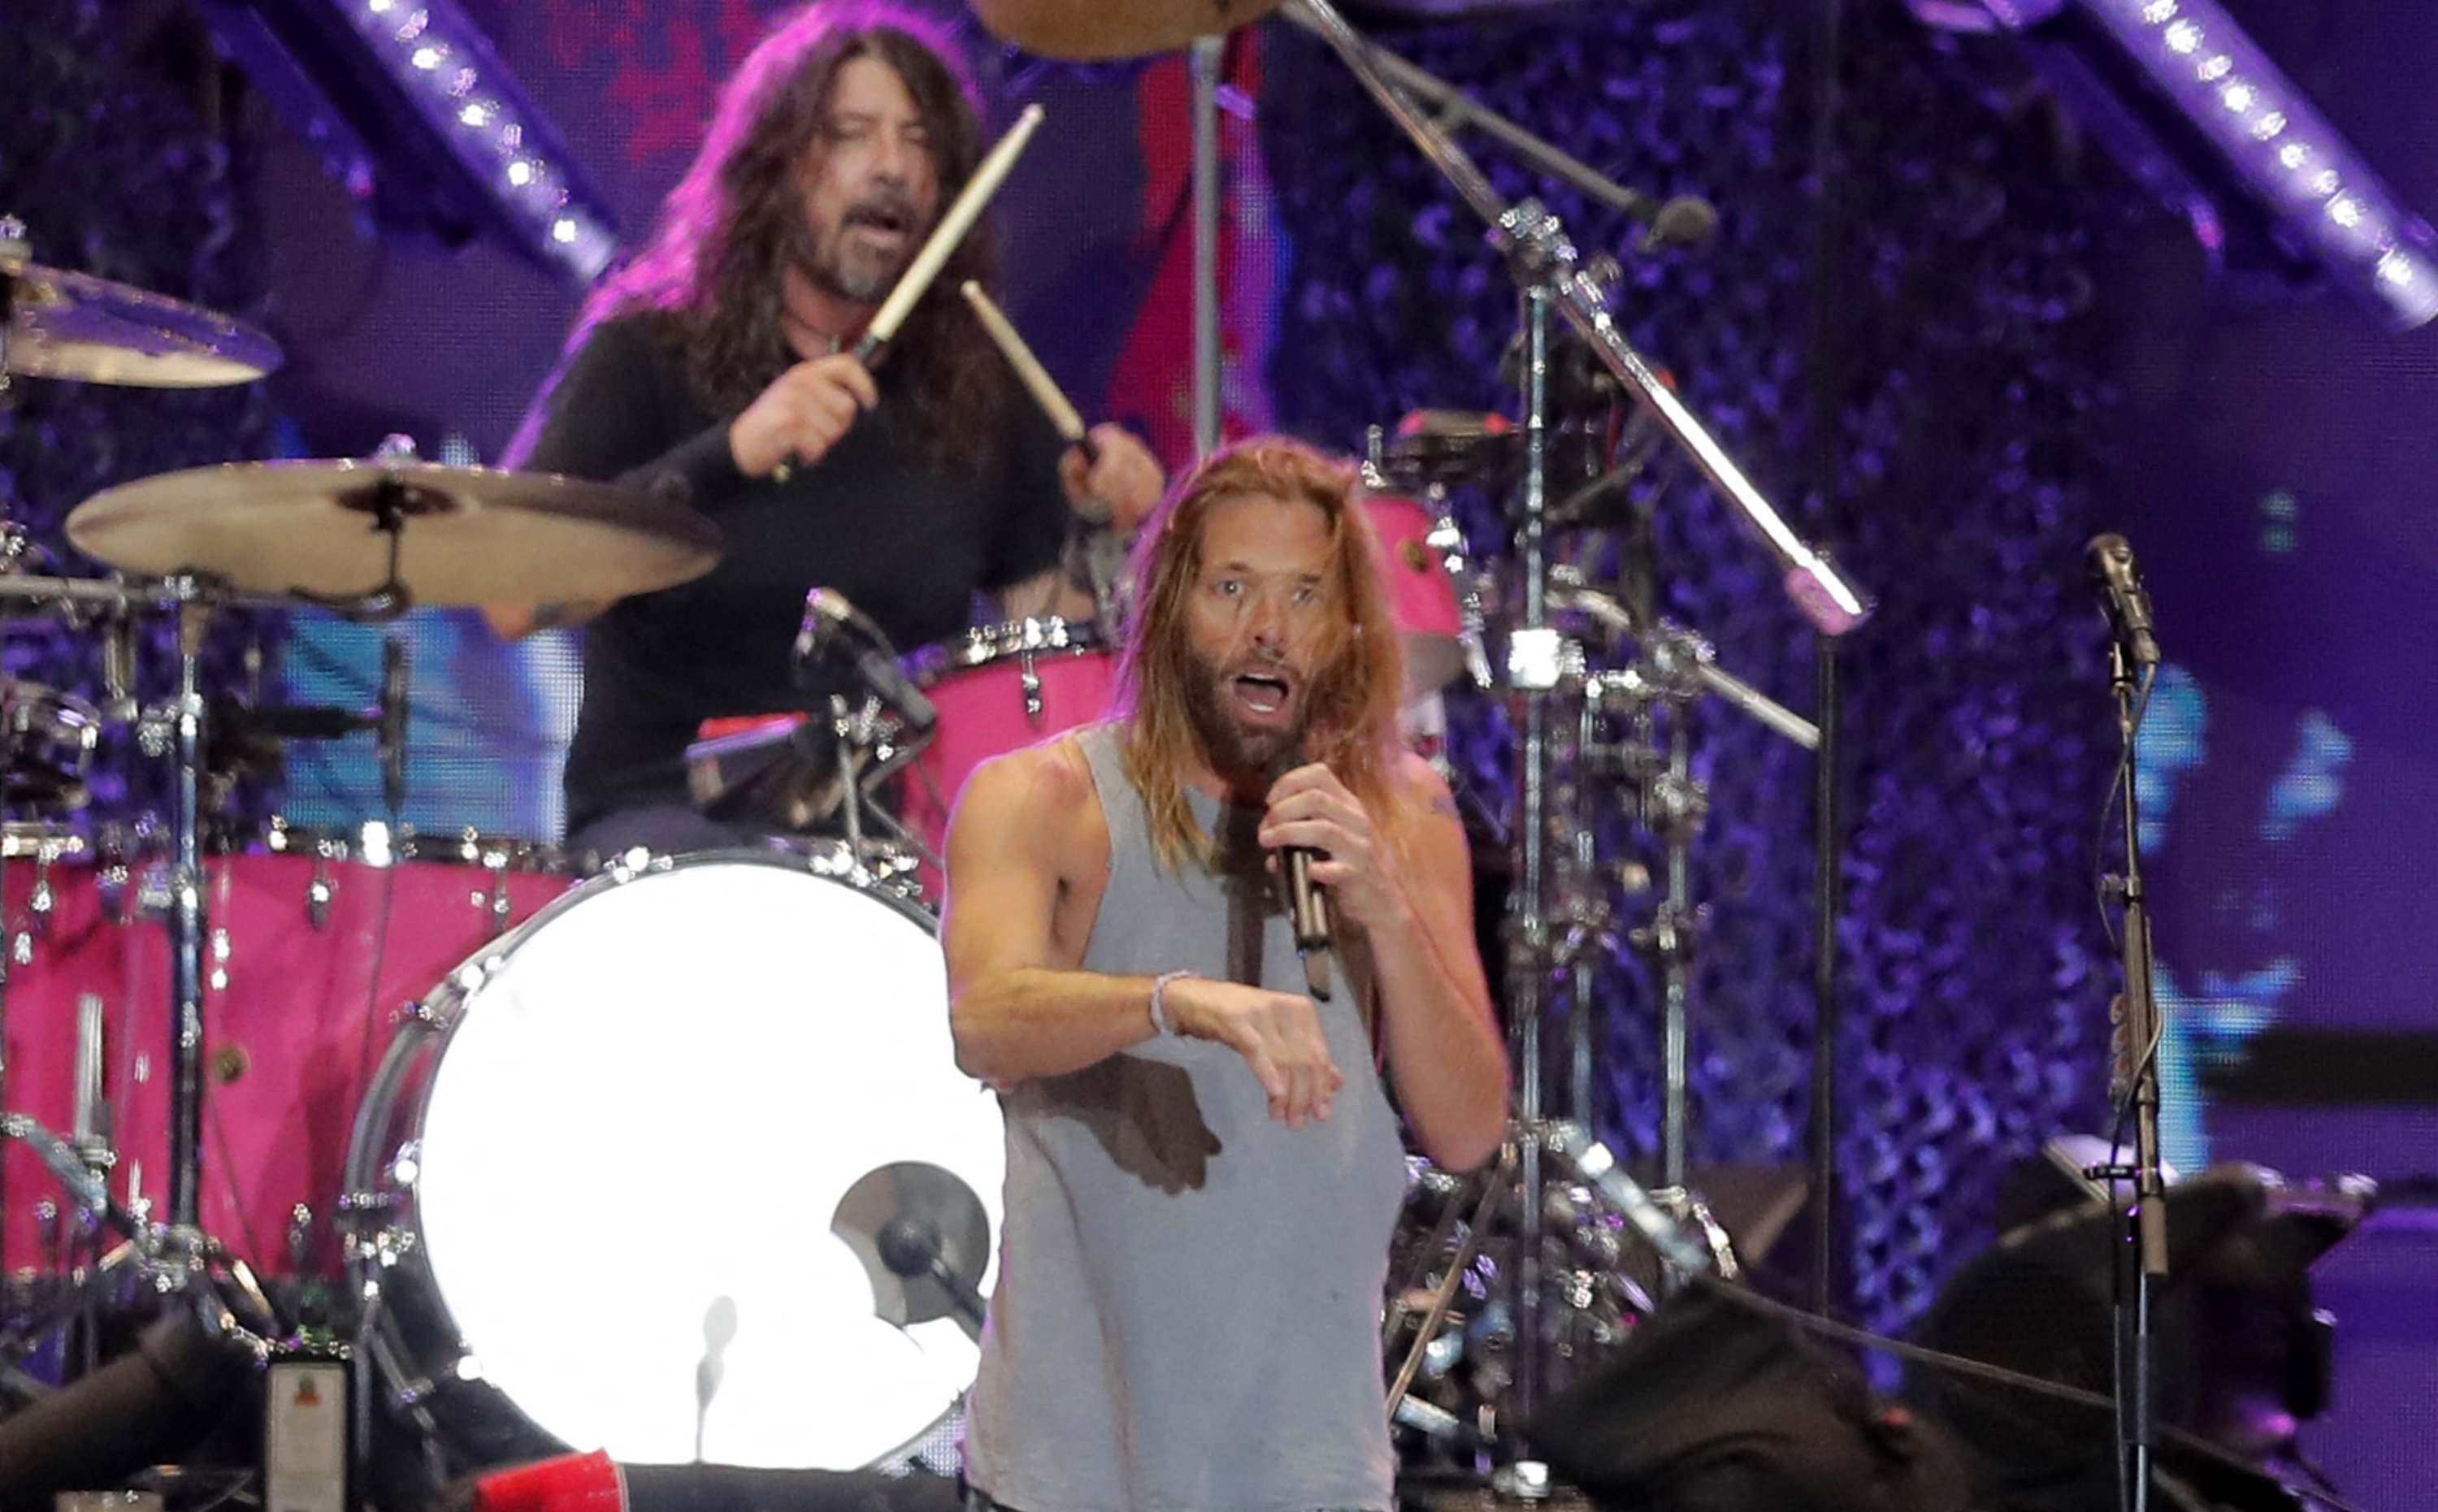 Drummer Foo Fighters Taylor Hawkins dan vokalis Dave Grohl tampil di atas panggung, di festival musik Lollapalooza 2022 di Santiago, 18 Maret 2022. (AFP)